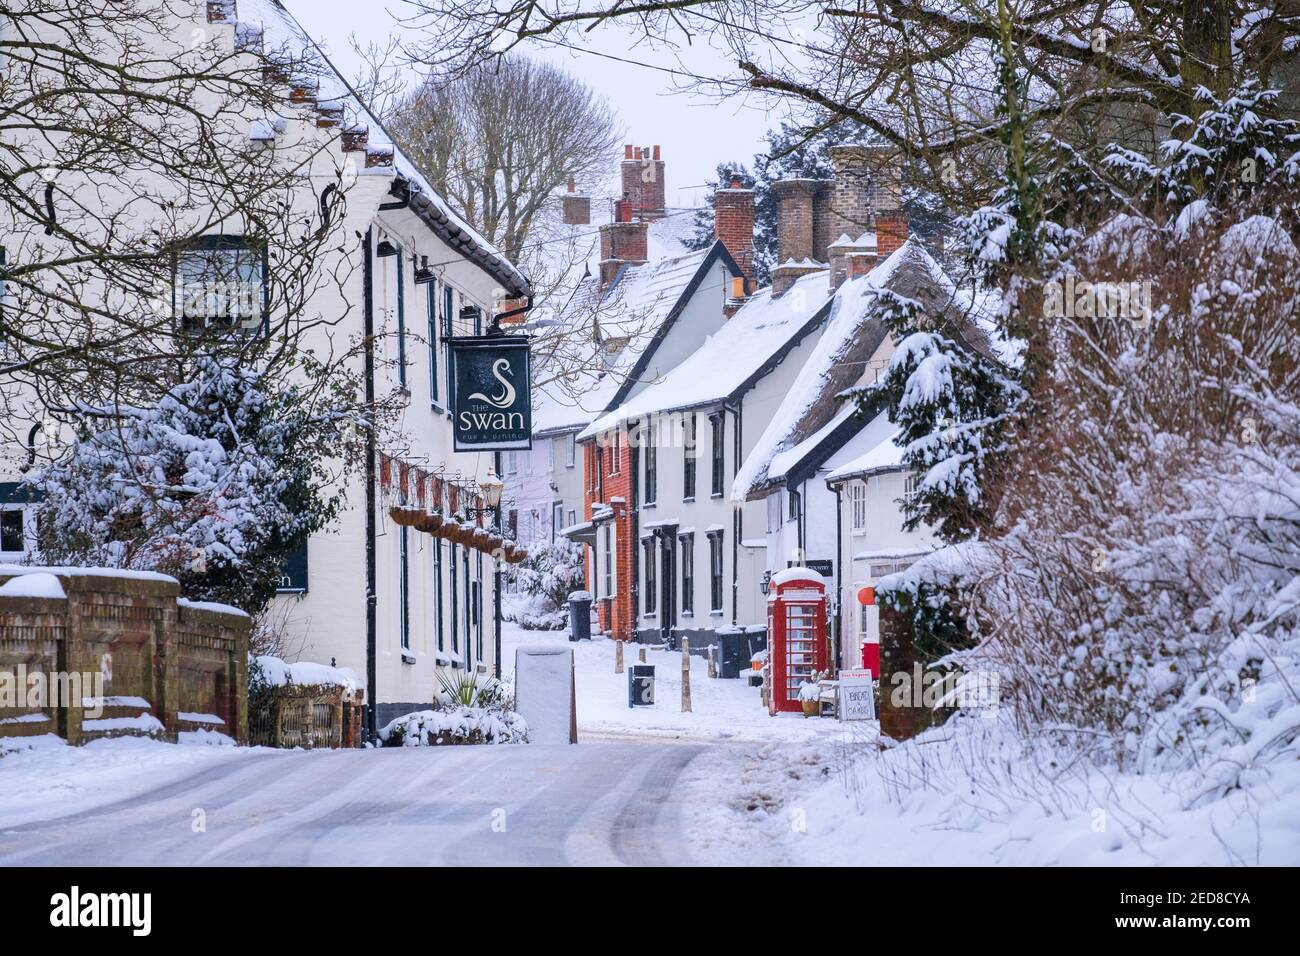 Le village de Hoxne, Suffolk, East Anglia, Royaume-Uni. Scène de neige après la '2ème bête de l'est'. Banque D'Images